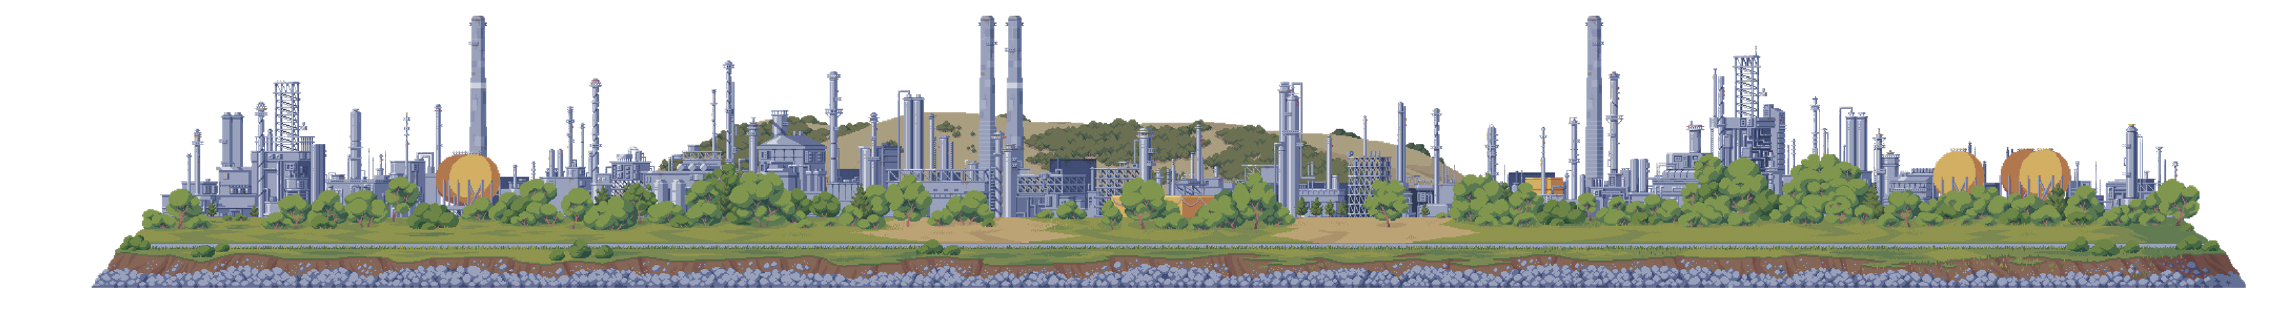 遊戲關卡遠景中的馬丁內斯煉油廠